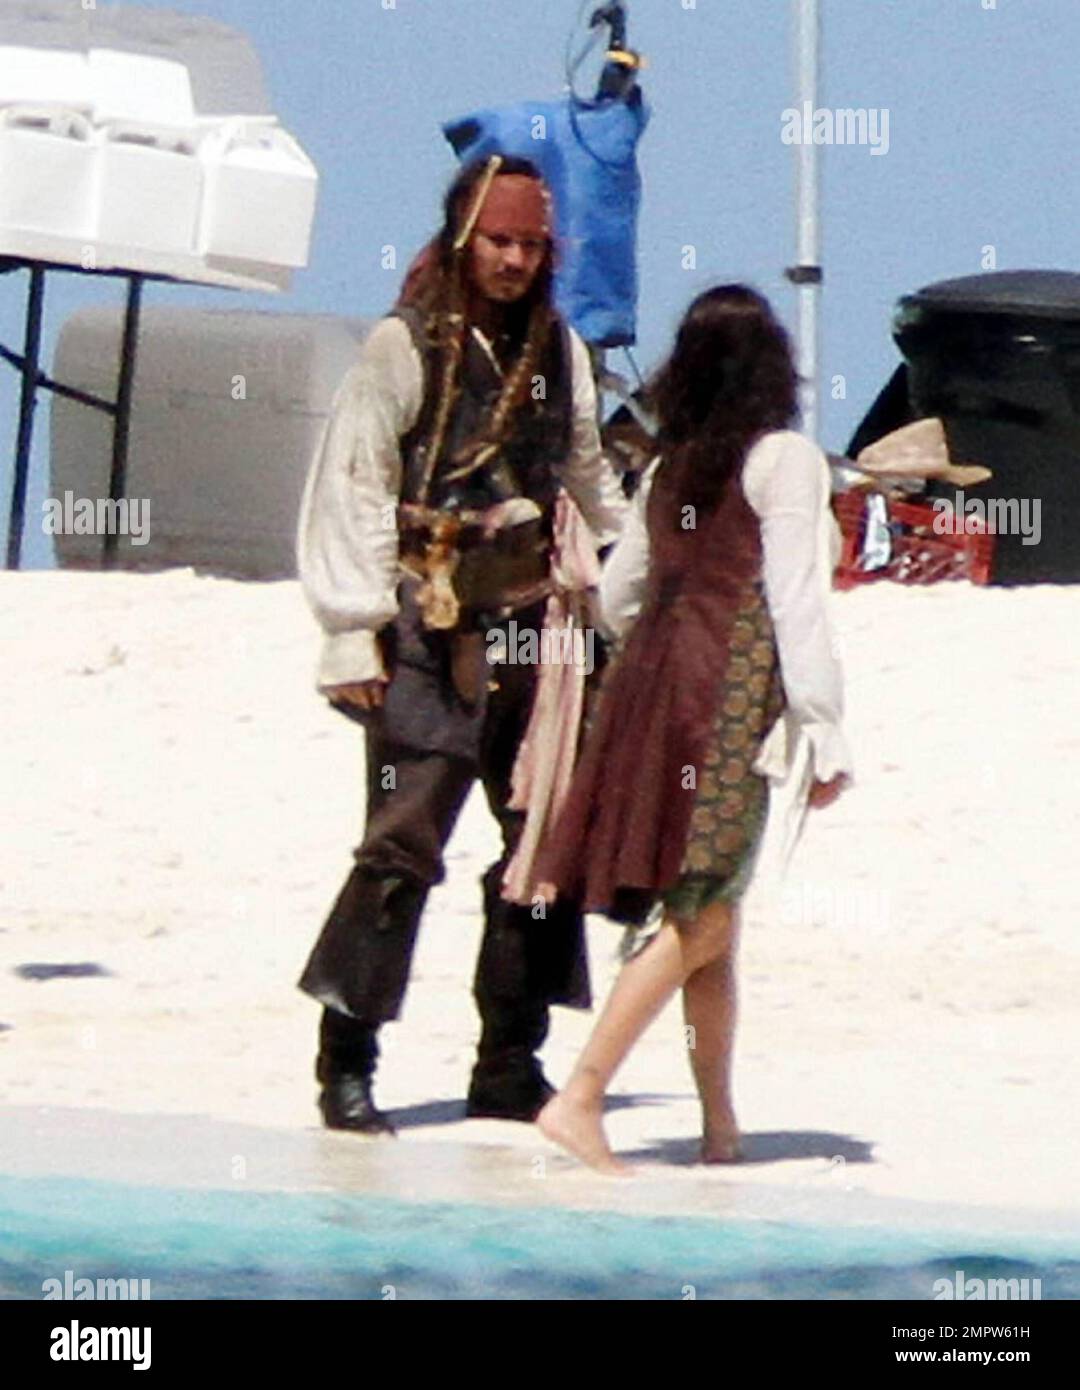 EXCLUSIVO! Johnny Depp y Penélope Cruz filman una escena de besos en una  isla desierta para la próxima secuela de Disney 'Piratas del Caribe: En  Mareas Extraños'. Depp, estaba en completo maquillaje